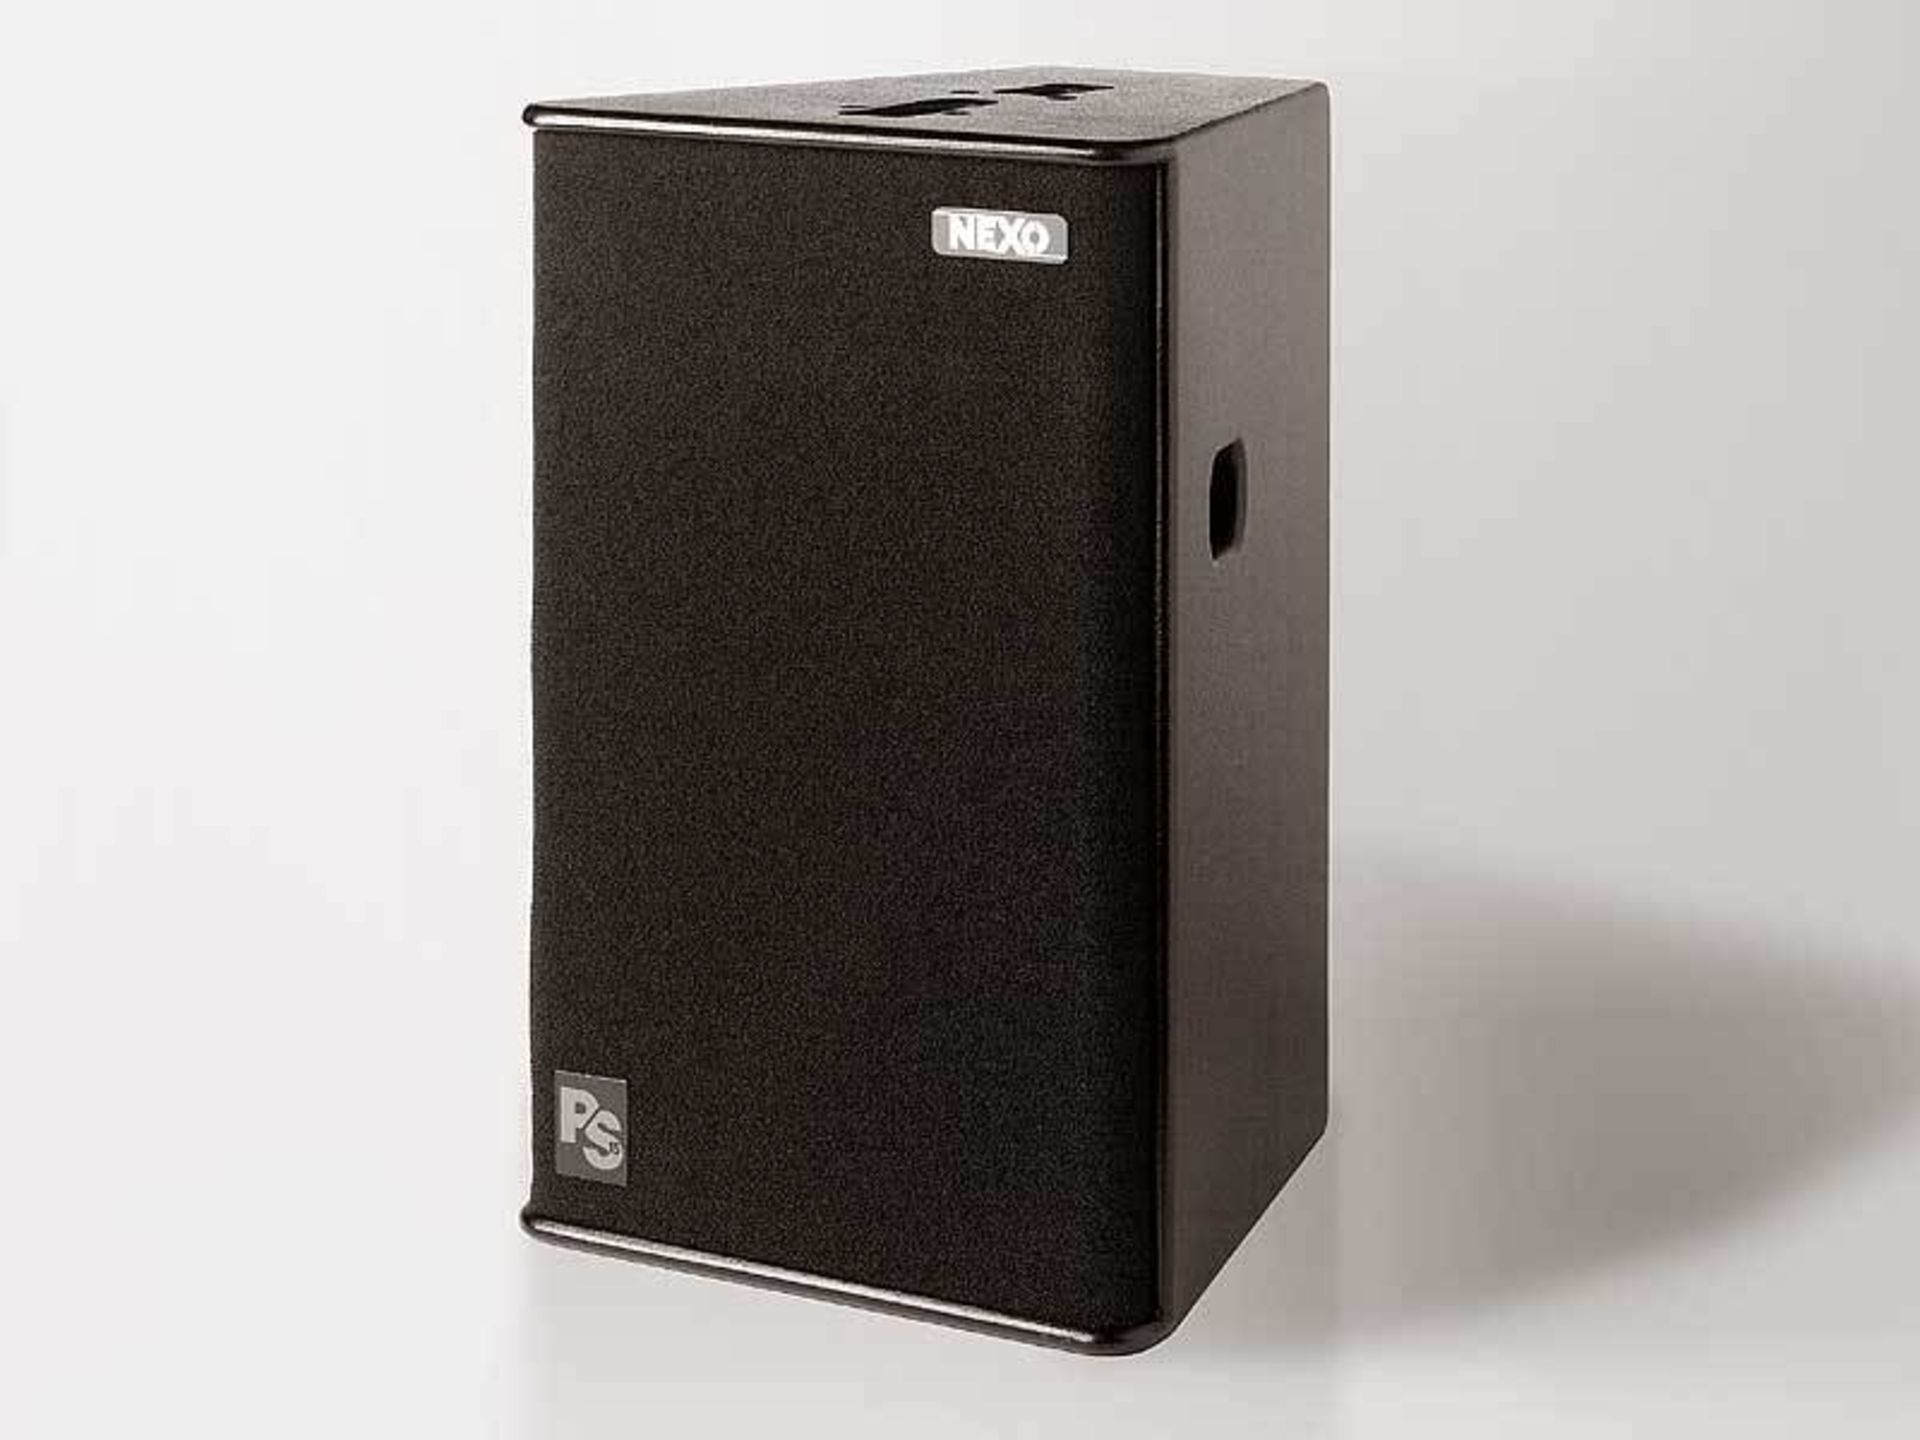 2 x Nexo PS15 Bass Bin Speakers In Dual Flight Case - Ref: 115 - CL581